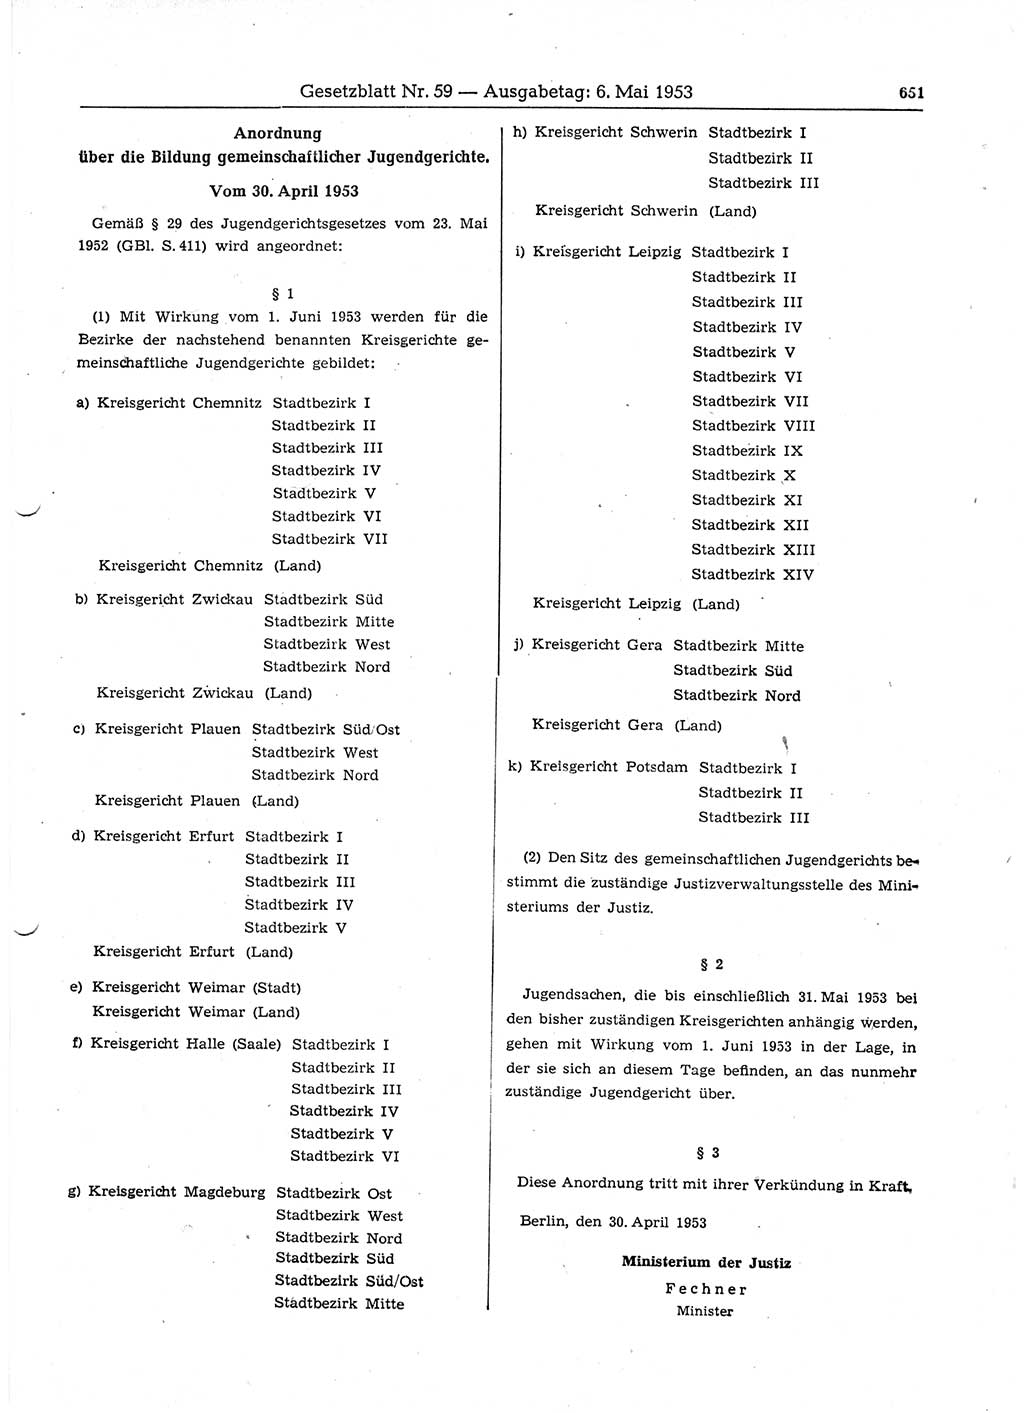 Gesetzblatt (GBl.) der Deutschen Demokratischen Republik (DDR) 1953, Seite 651 (GBl. DDR 1953, S. 651)